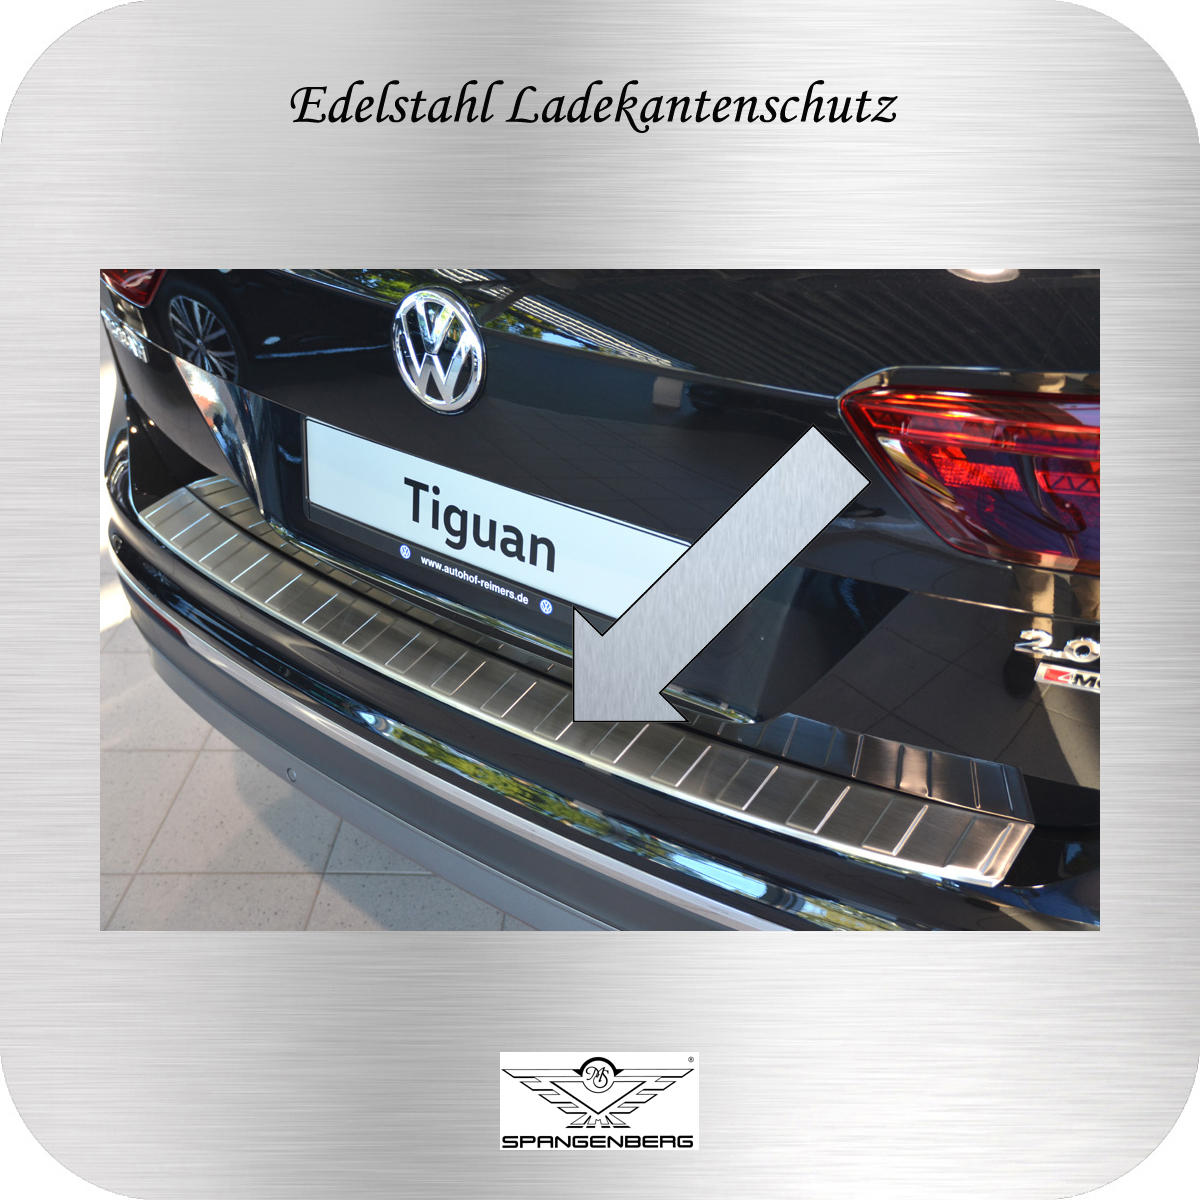 Ladekantenschutz Edelstahl Volkswagen VW Tiguan II SUV AD1 Kombi 2016- 3235459